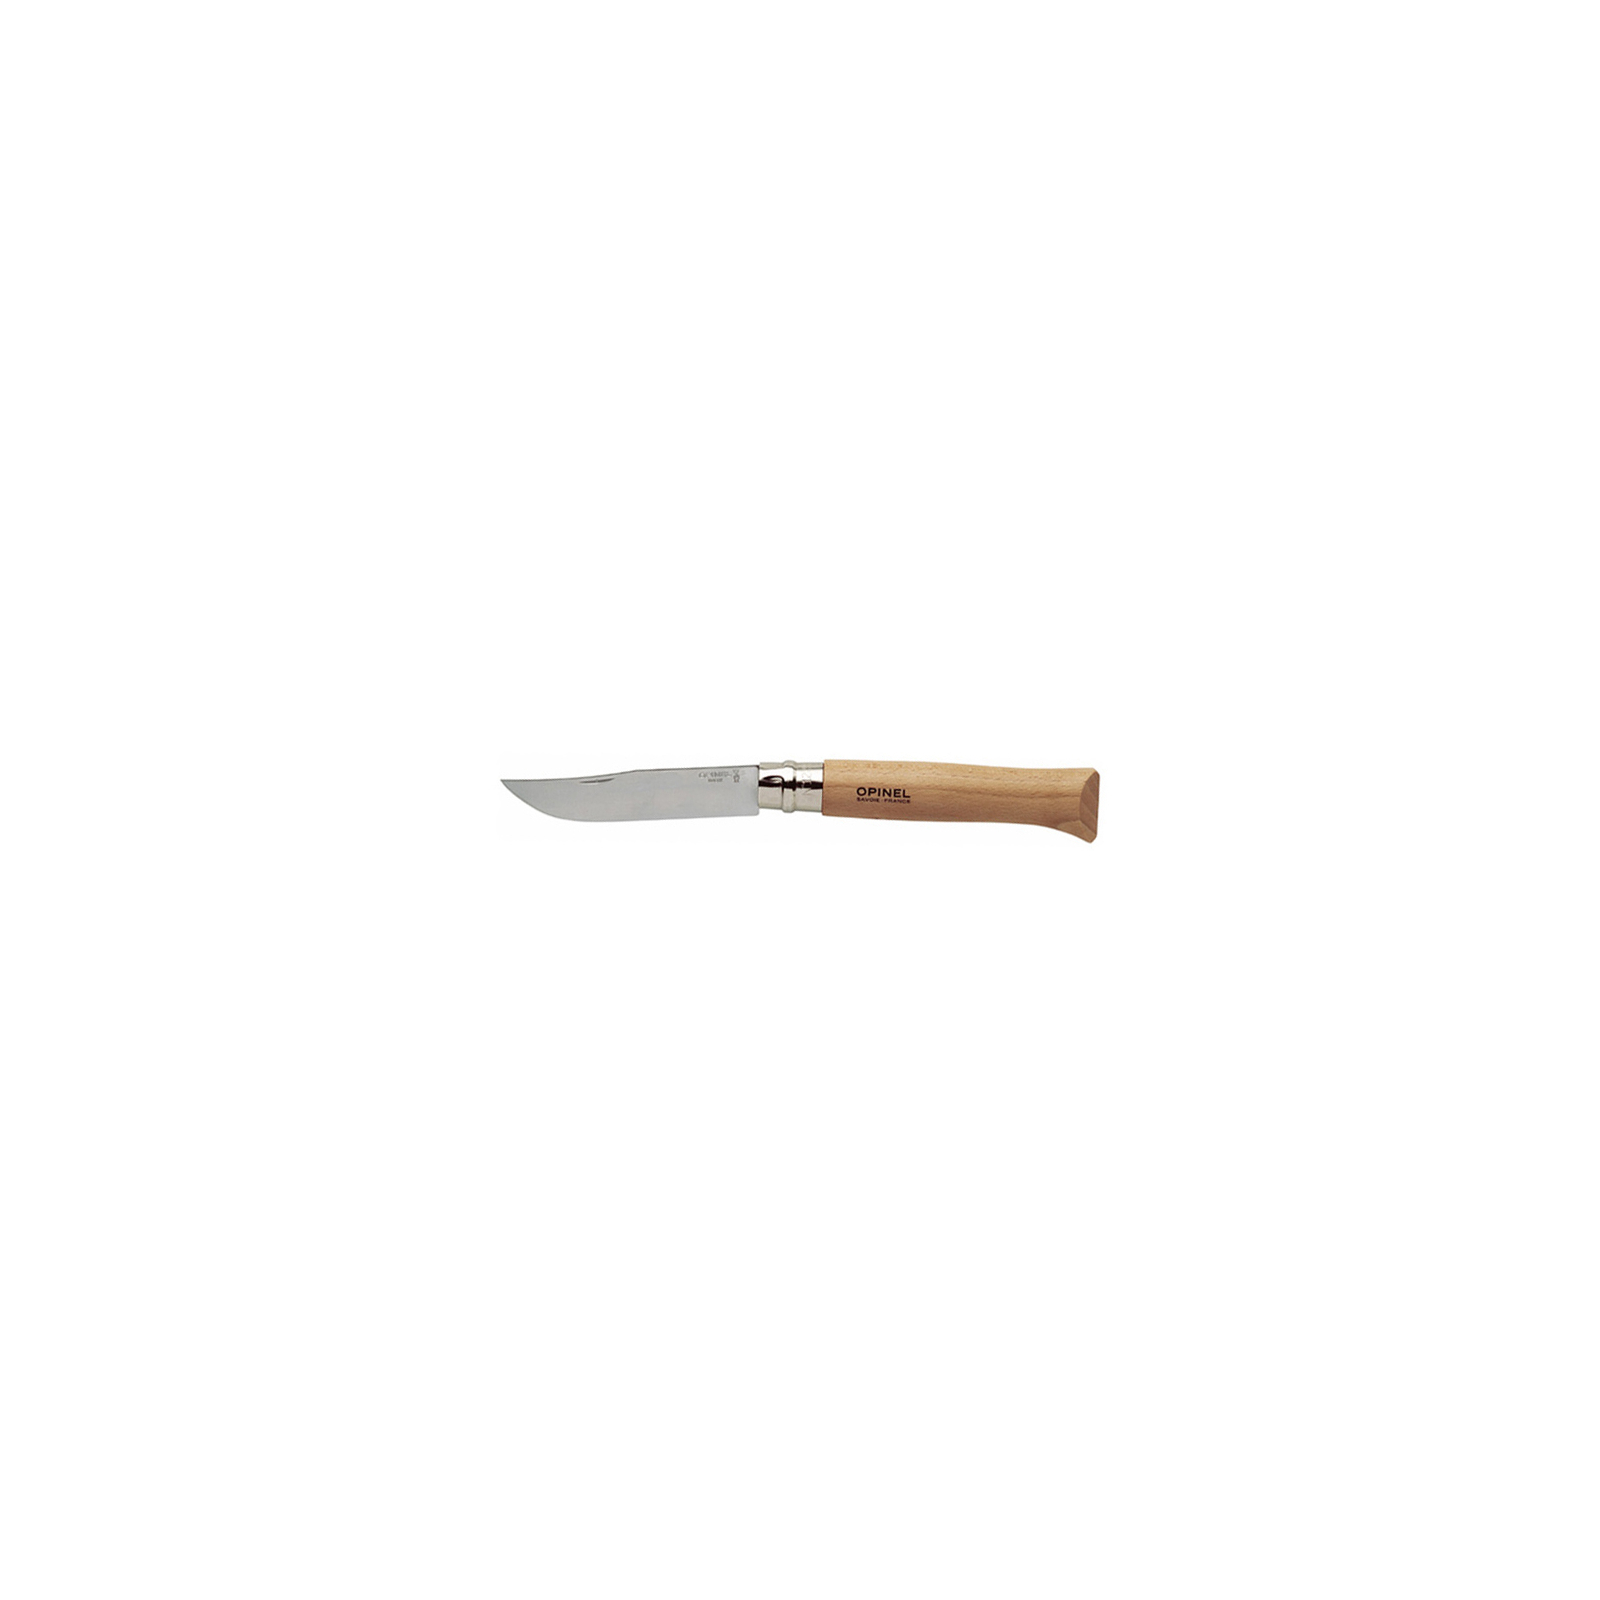 Нож Opinel №12 Inox VRI, без упаковки (1084)